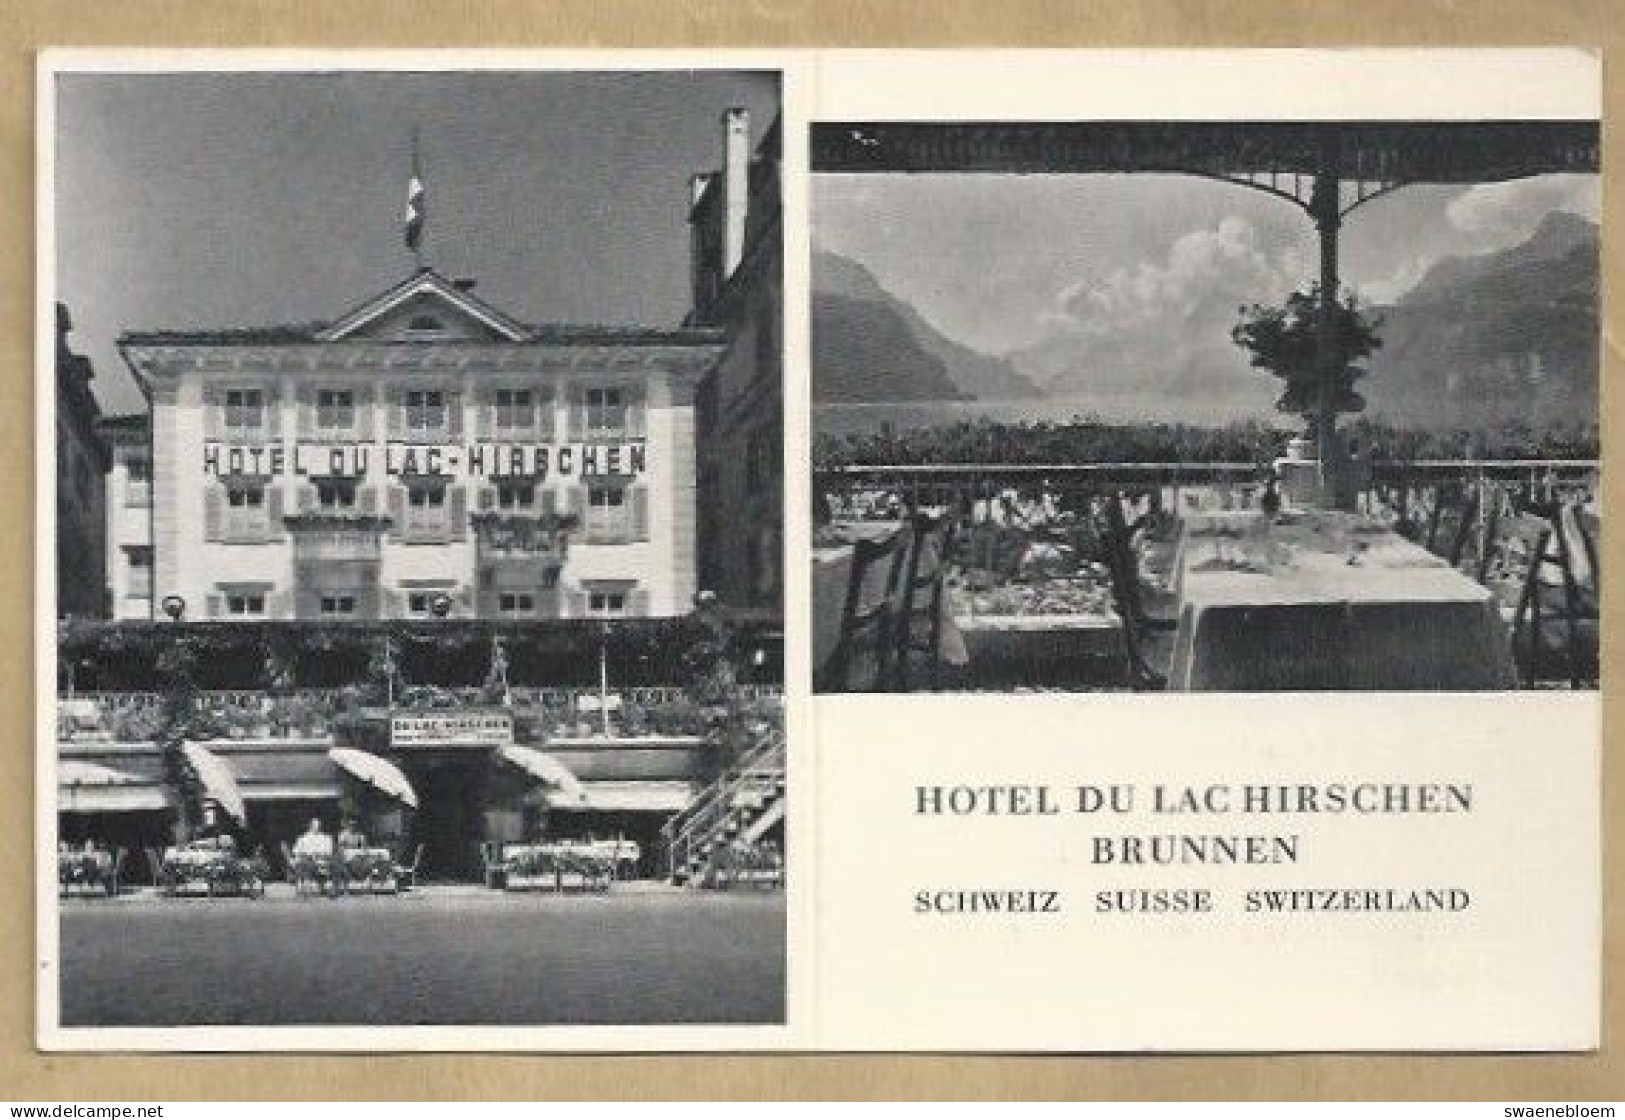 CH.- SCHWEIZ. SUISSE. SWITZERLAND. HOTEL DU LAC HIRSCHEN BRUNNEN. - Hotels & Restaurants